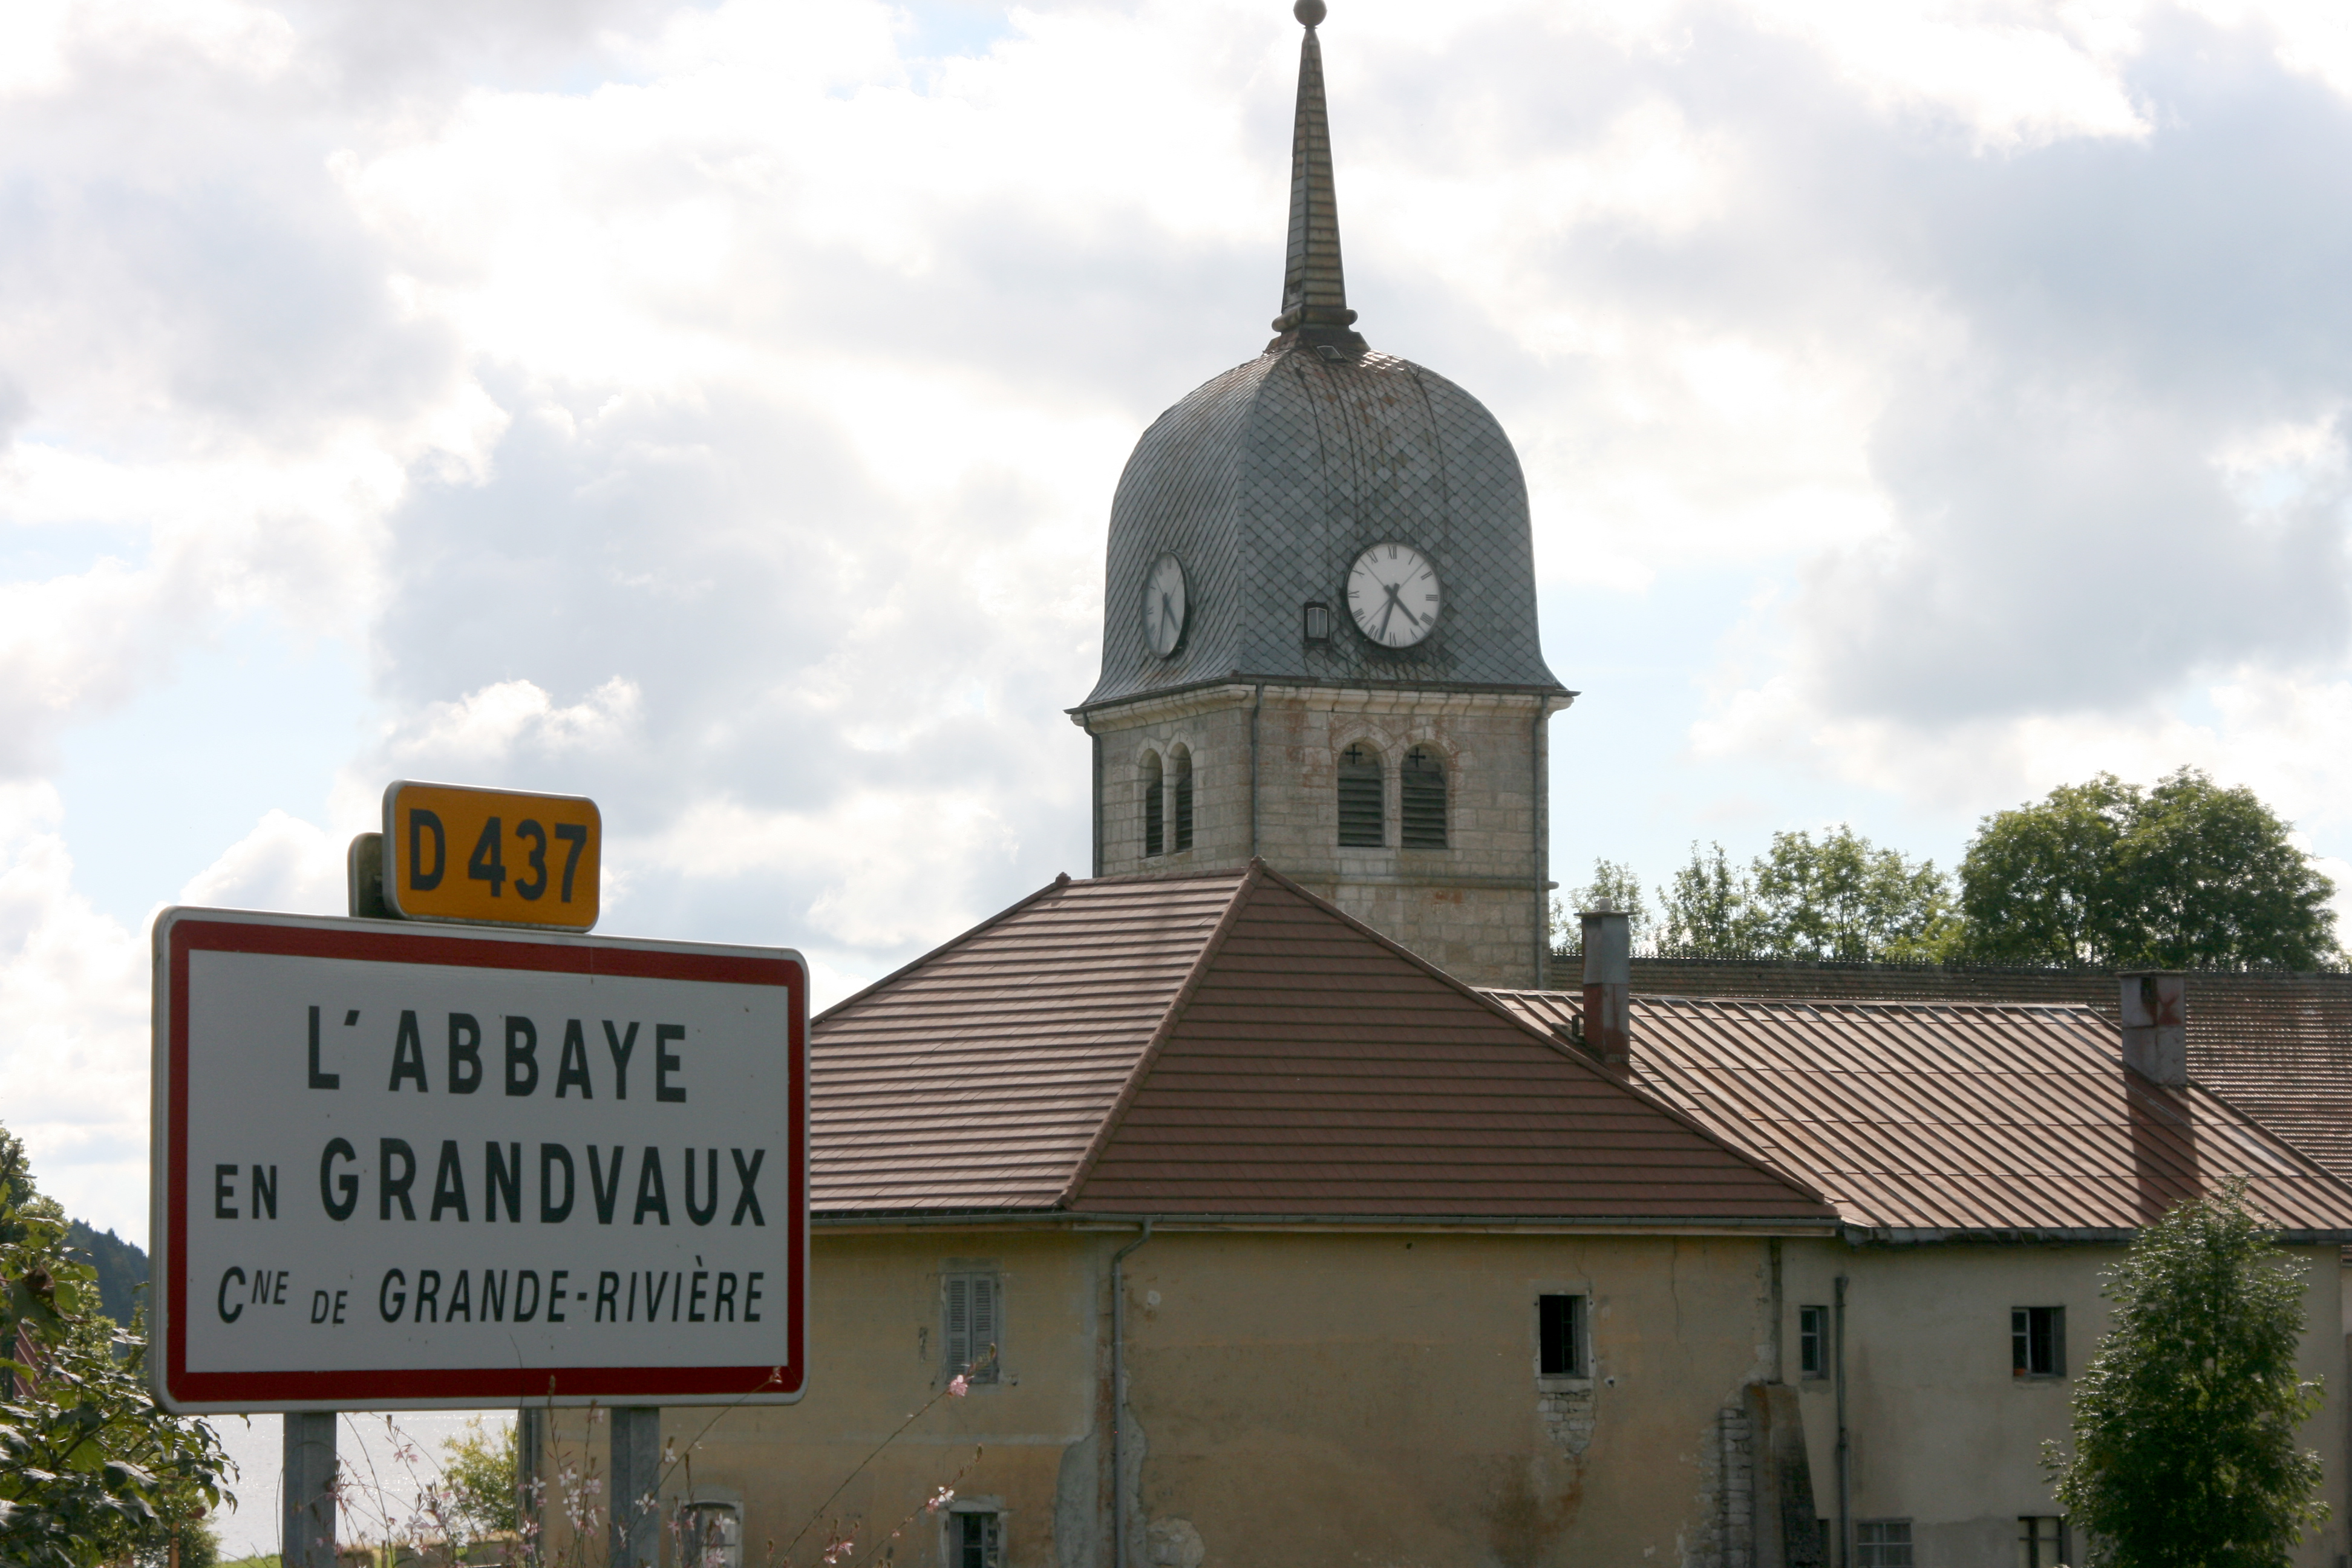 Abbaye en Grandvaux, Grande-Rivière